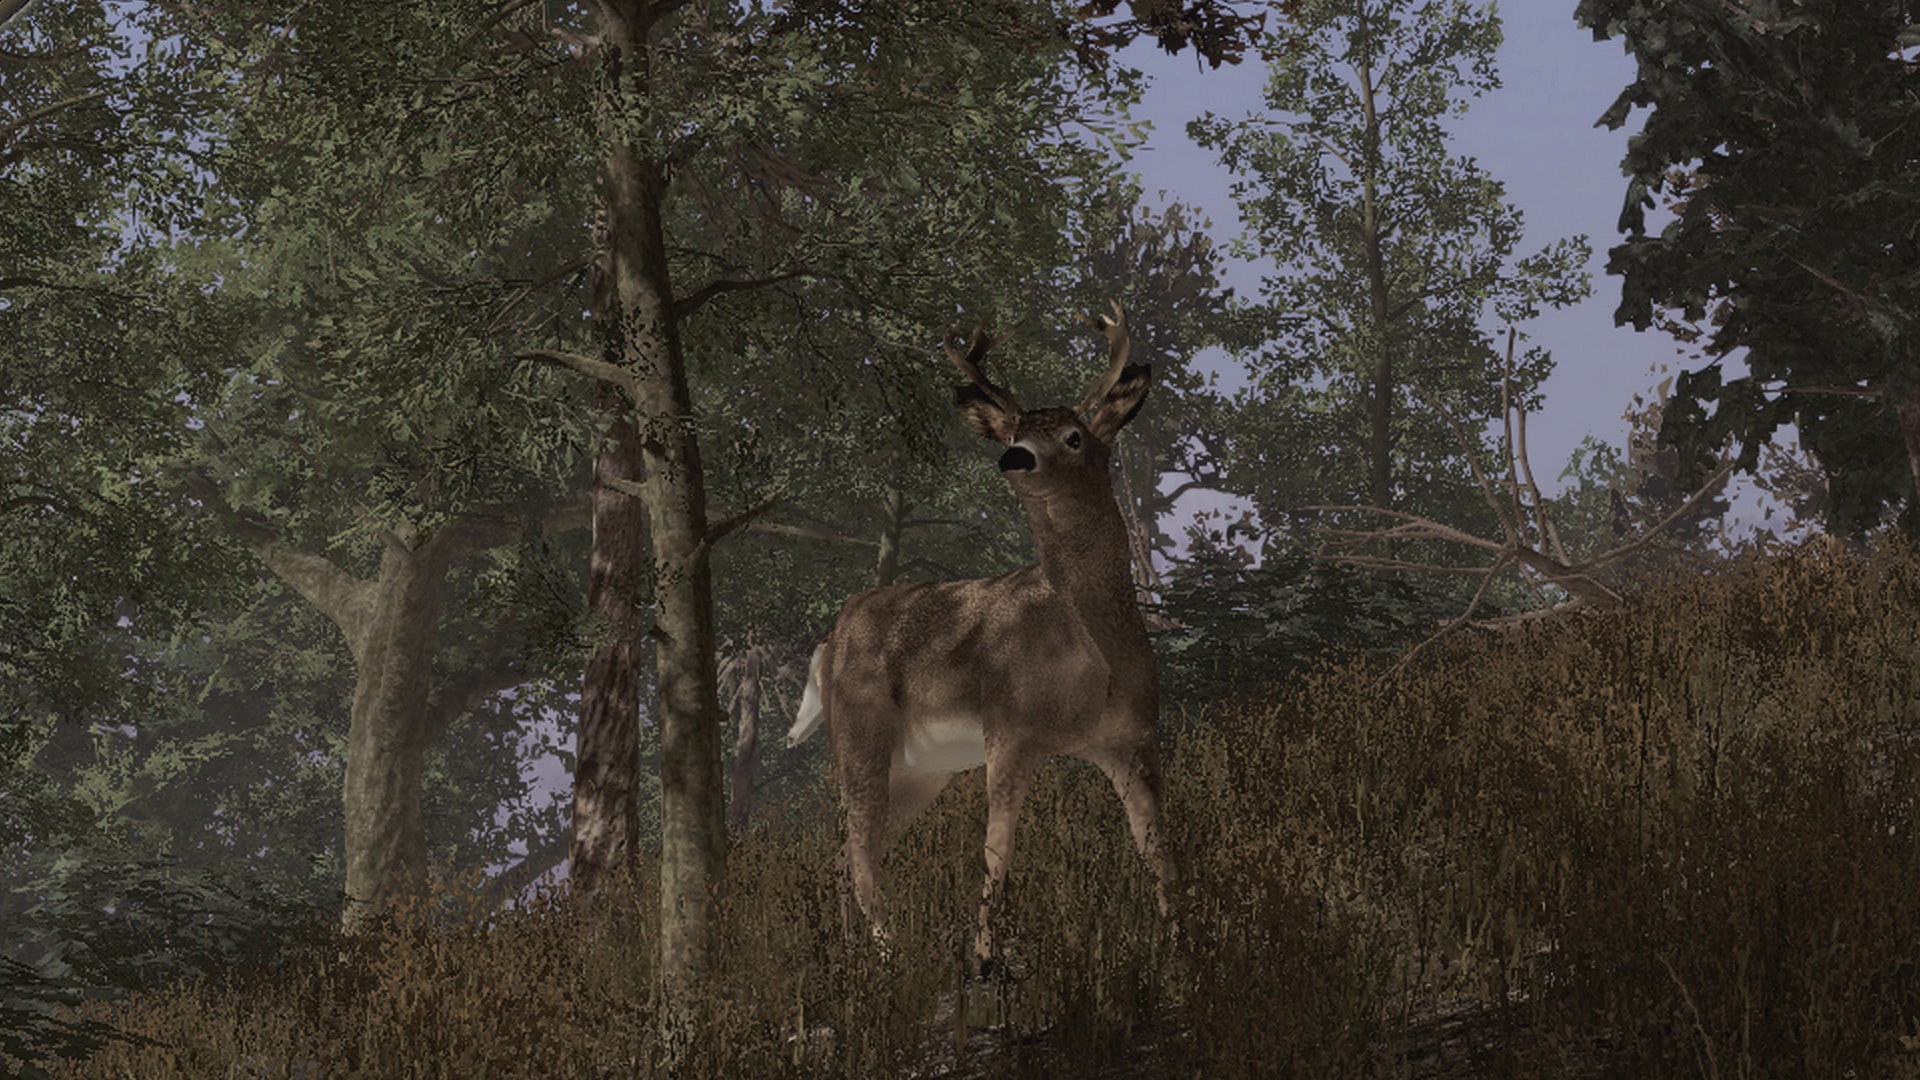 Hunting ps4. Pro Deer Hunting 2. Deer Isle DAYZ. Deer Hunter on Vampires. Girl Hunting Deer.